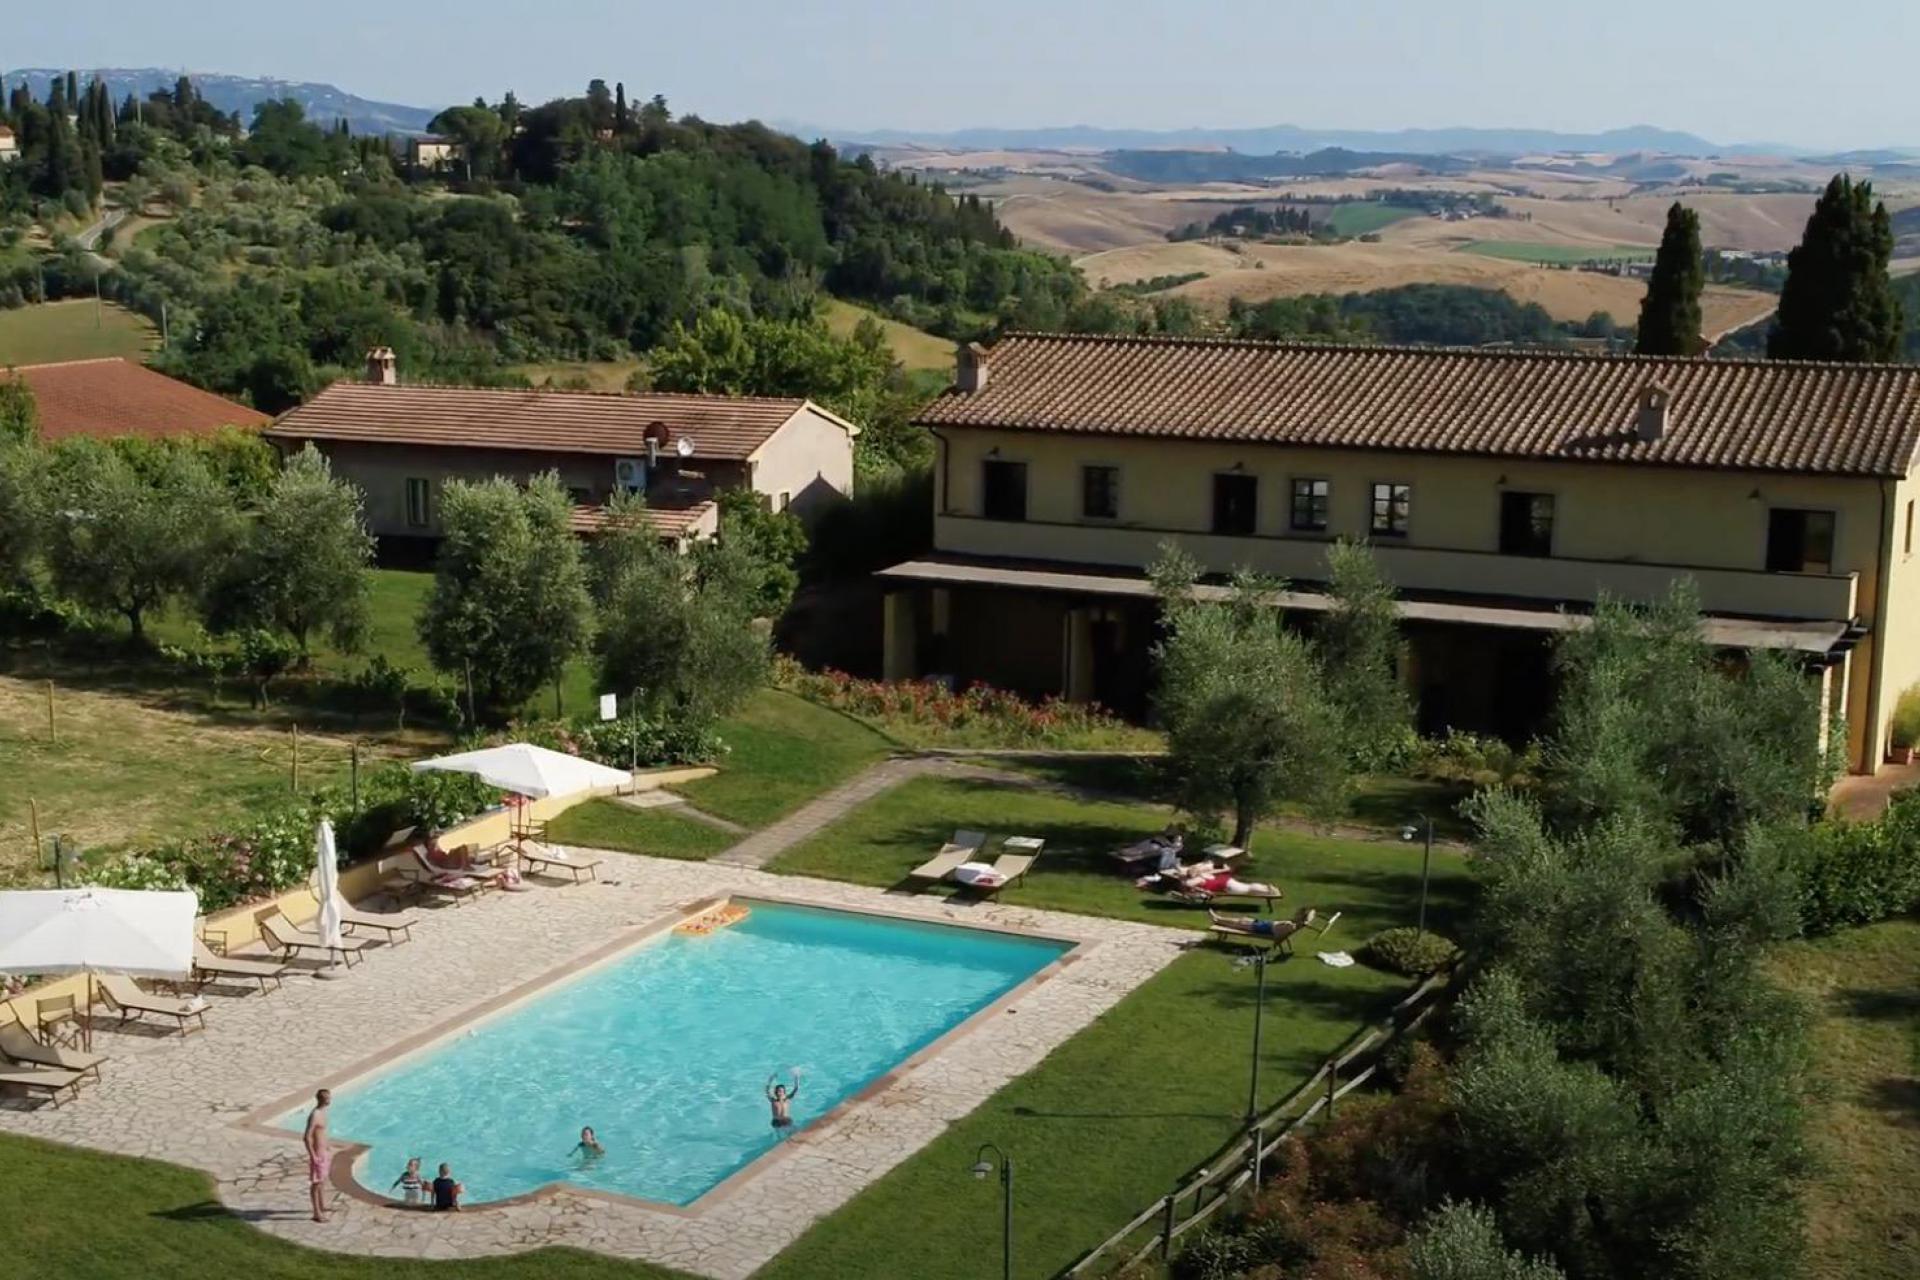 Wijnboerderij in Toscane met prachtig uitzicht